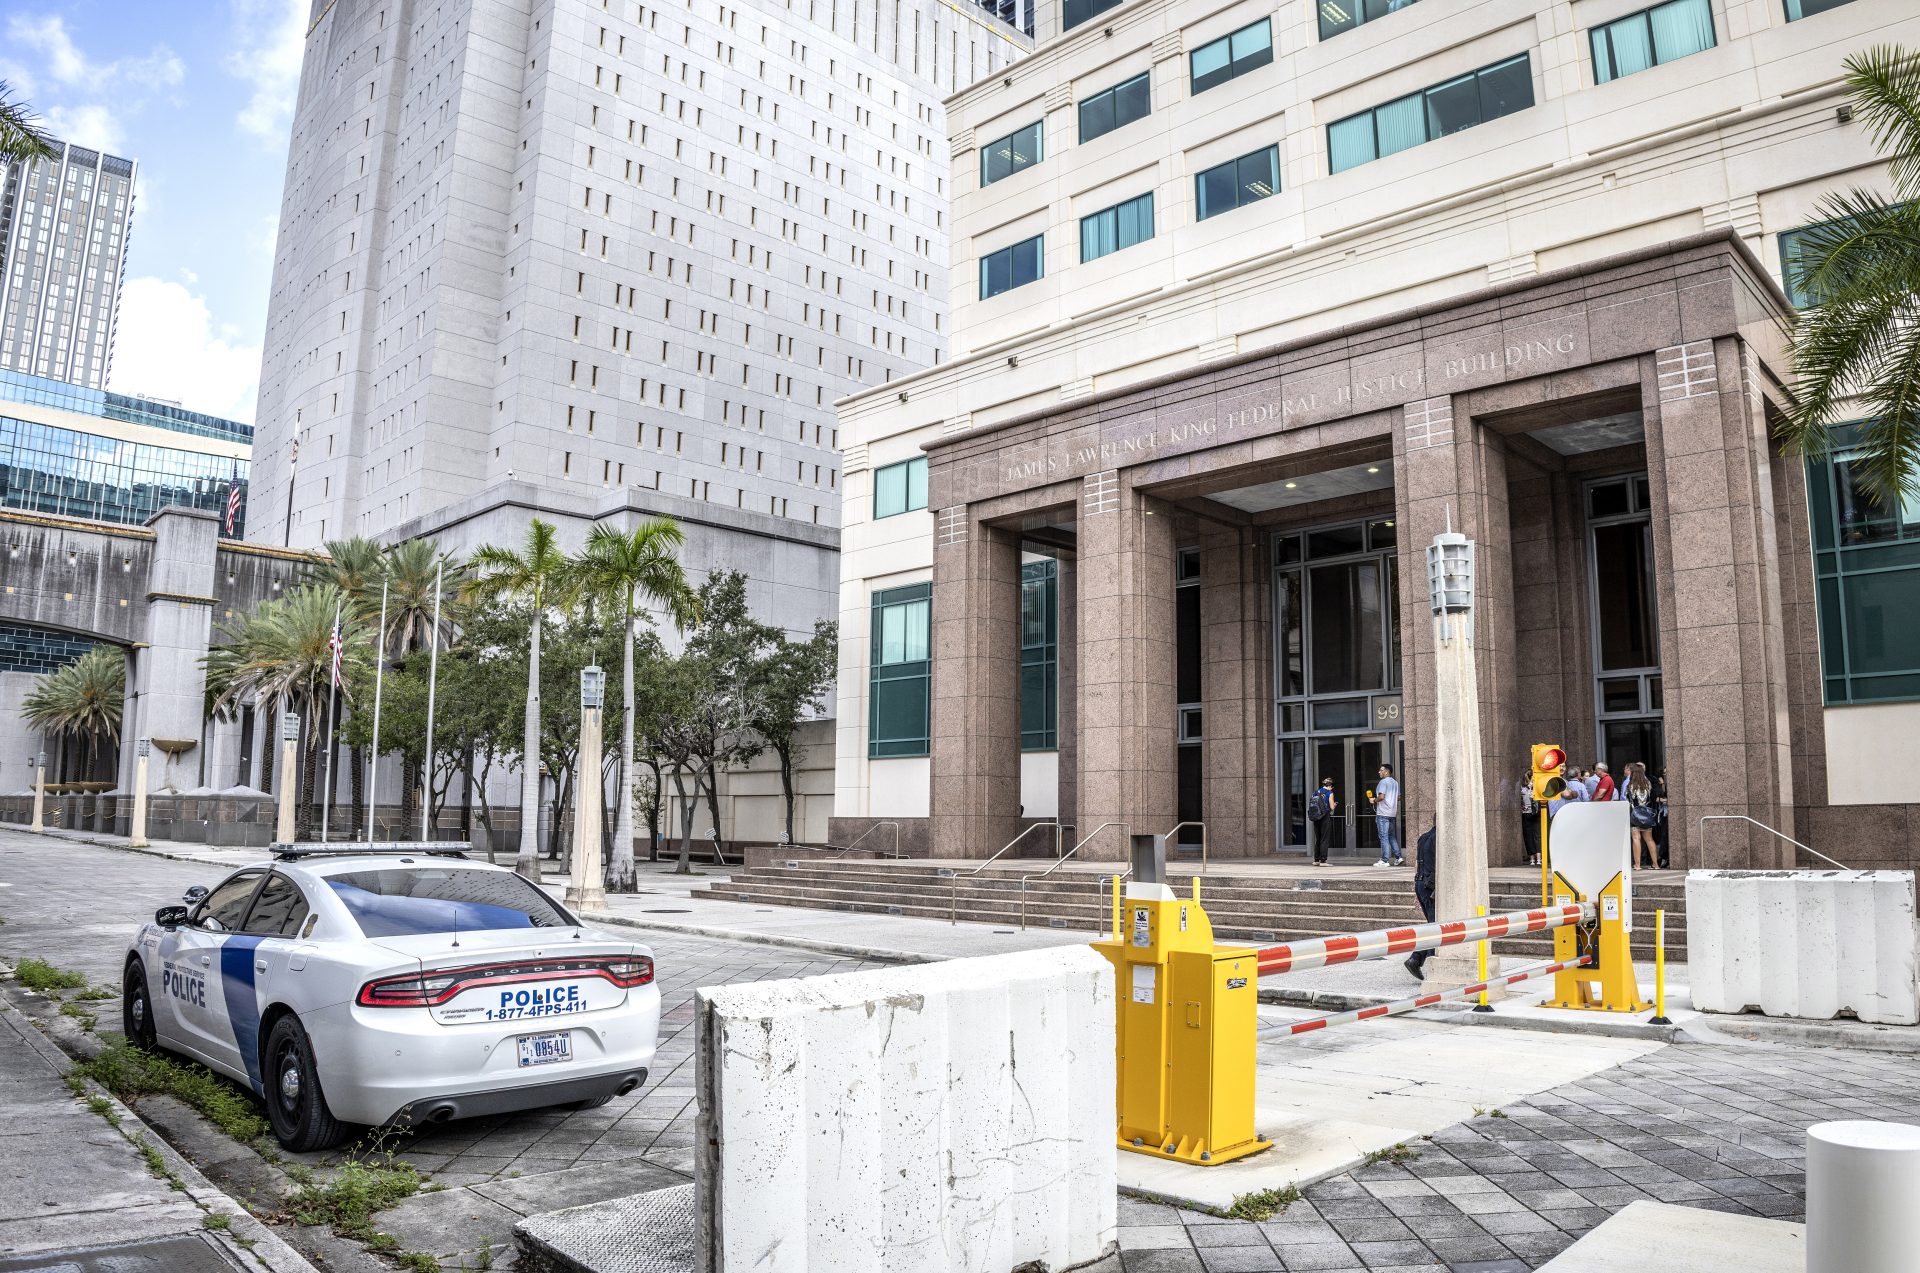 Vista de la entrada al Tribunal Federal James Lawrence King, donde Waltine Nauta, asistente dl exmandatario Donald Trump, tenía prevista una audiencia judicial, este 27 de junio de 2023, en Miami (EE.UU.). EFE/Cristóbal Herrera